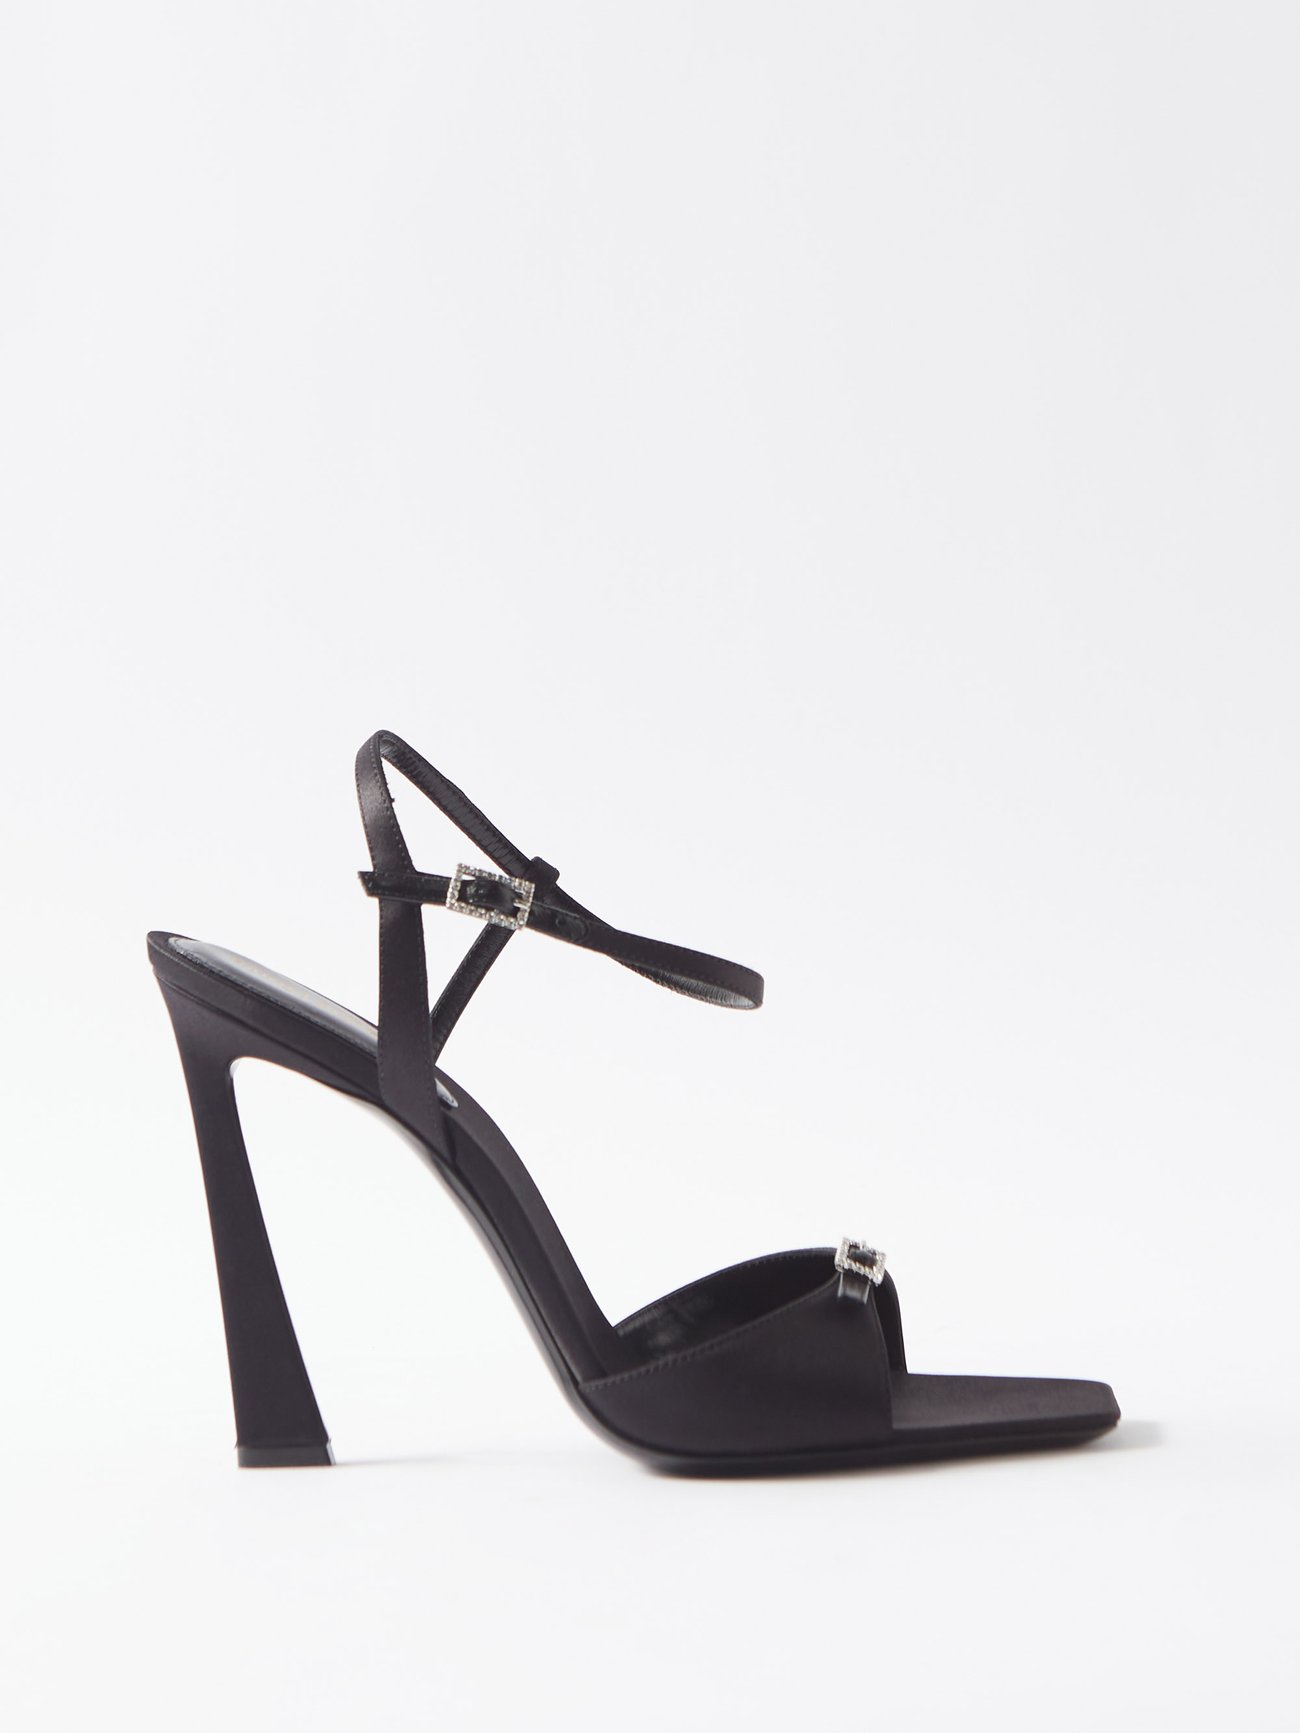 Ava 105 Embellished Satin Sandals in Black - Saint Laurent